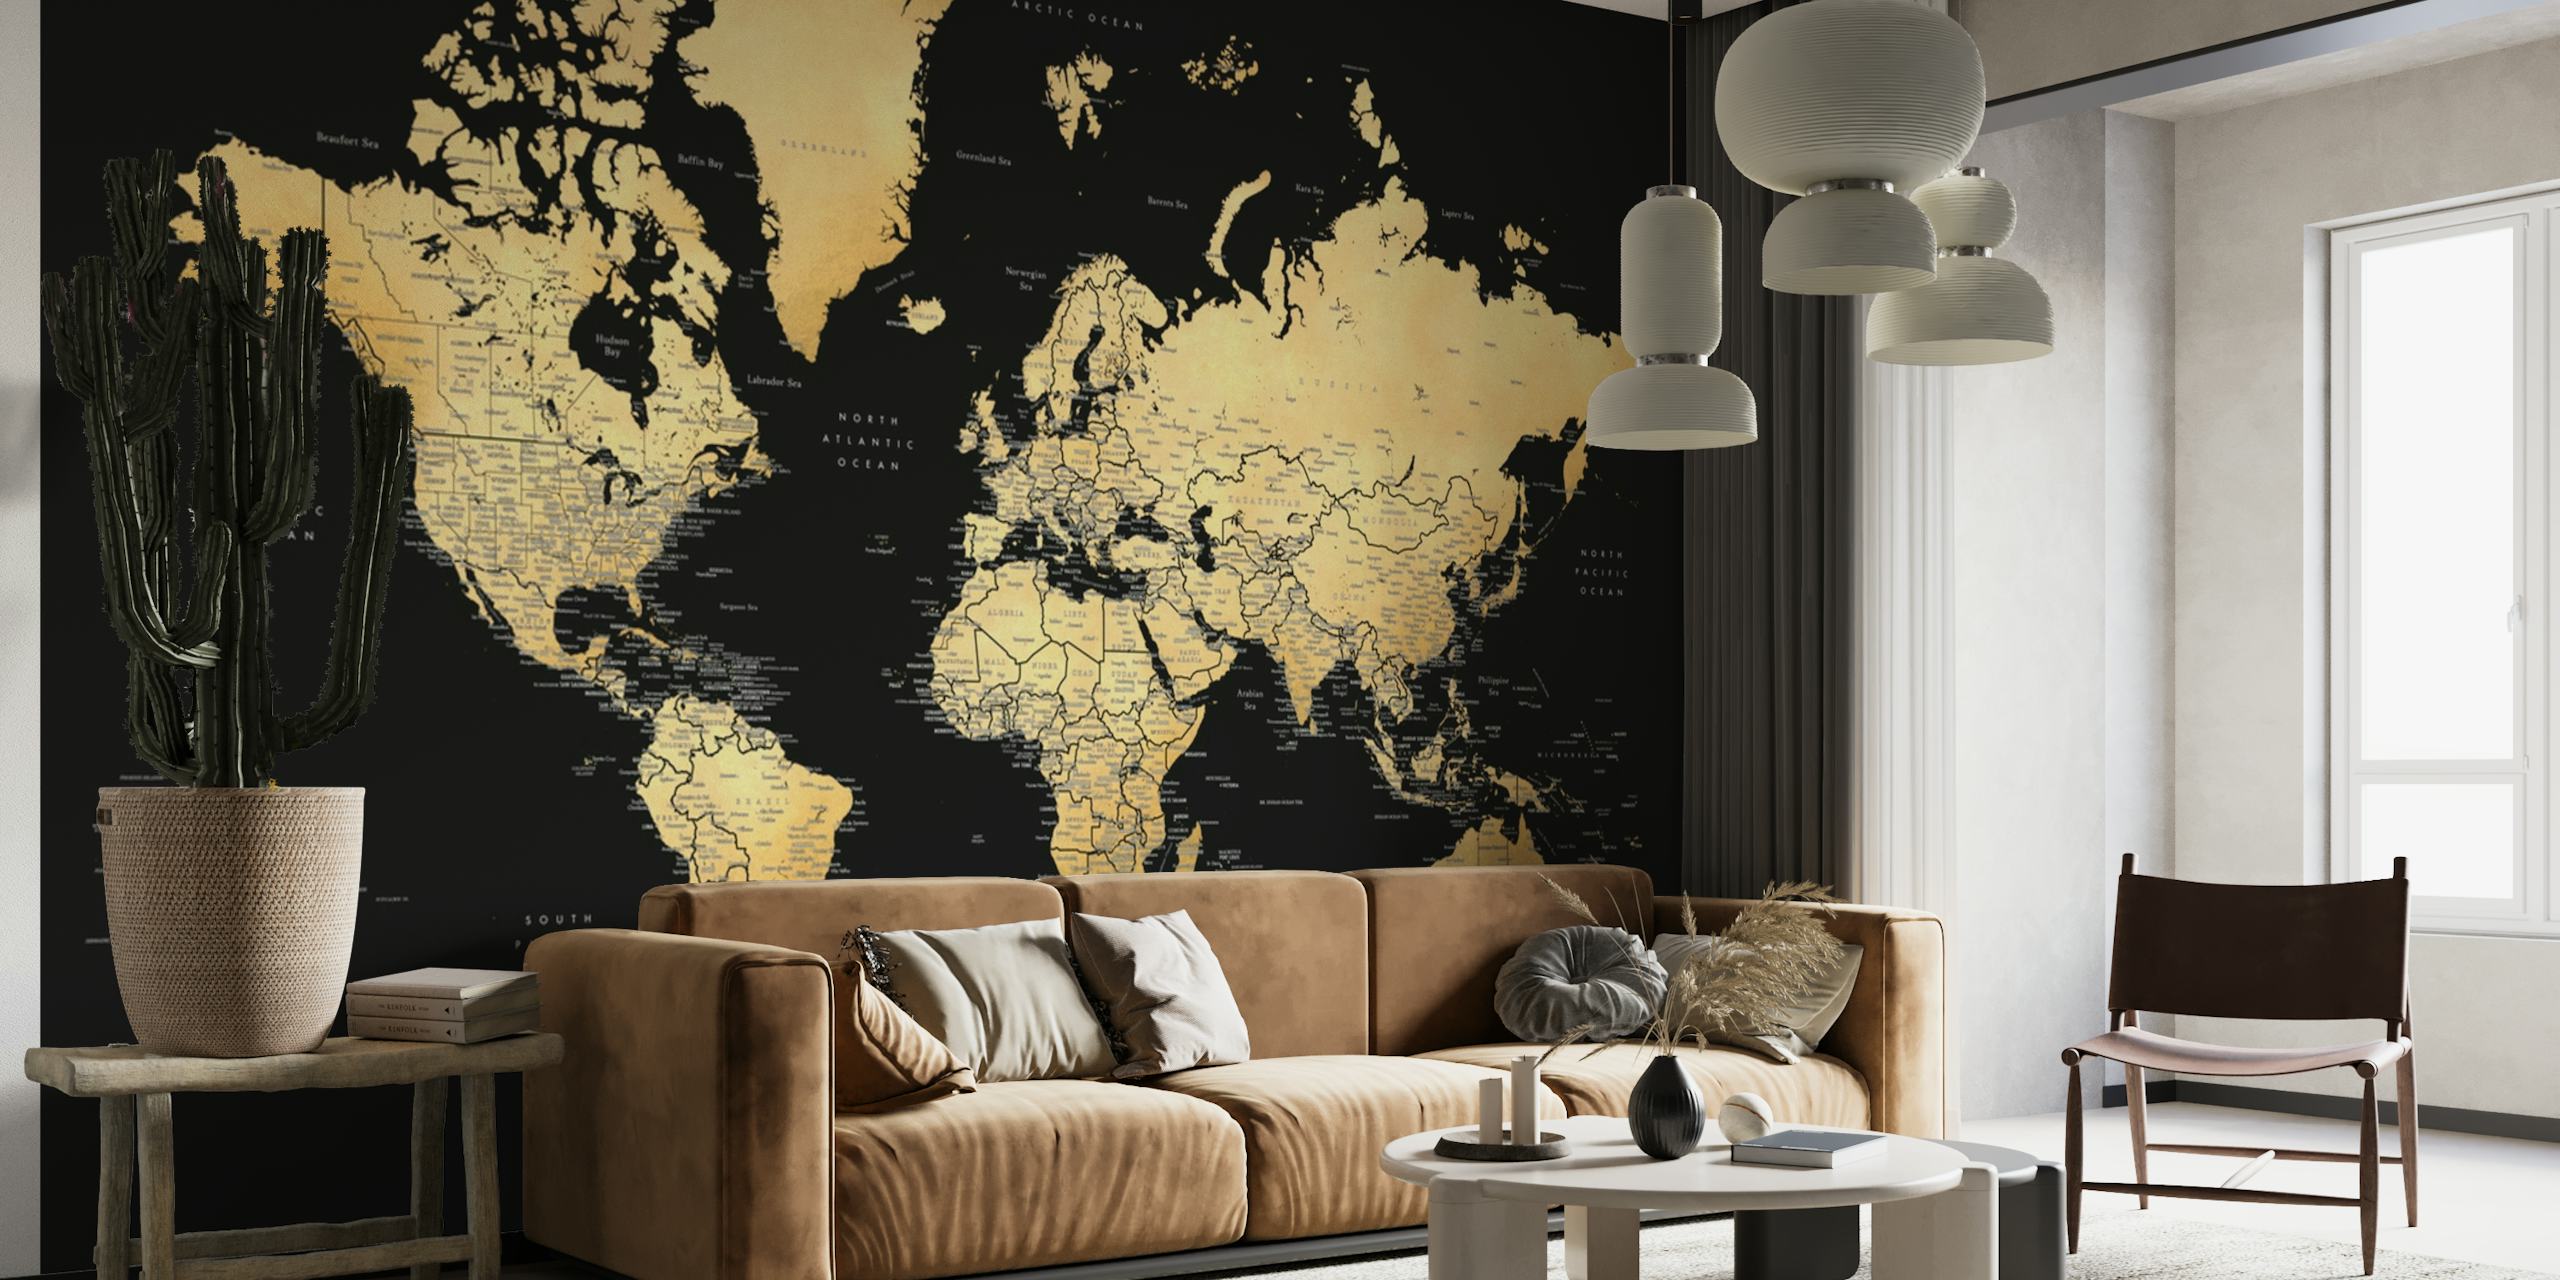 Papier peint mural élégant avec une carte du monde dans de riches tons sépia avec des étiquettes détaillées